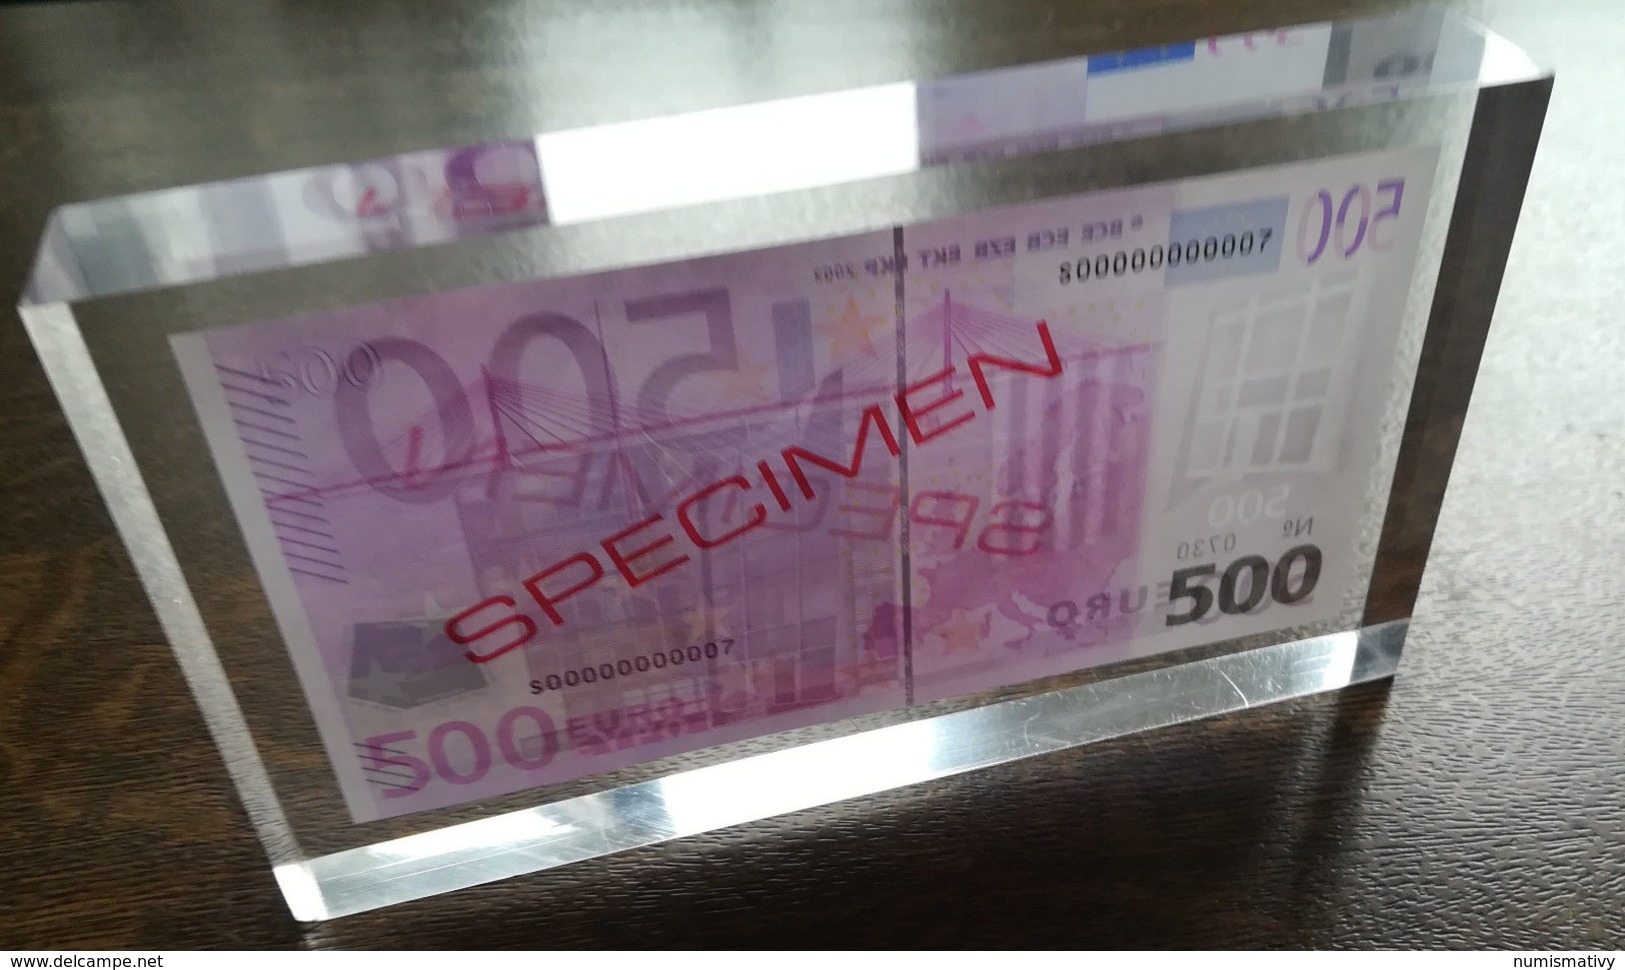 ESSAI billet 500 EURO dans bloc plexi SPECIMEN de la BCE probe testnote test